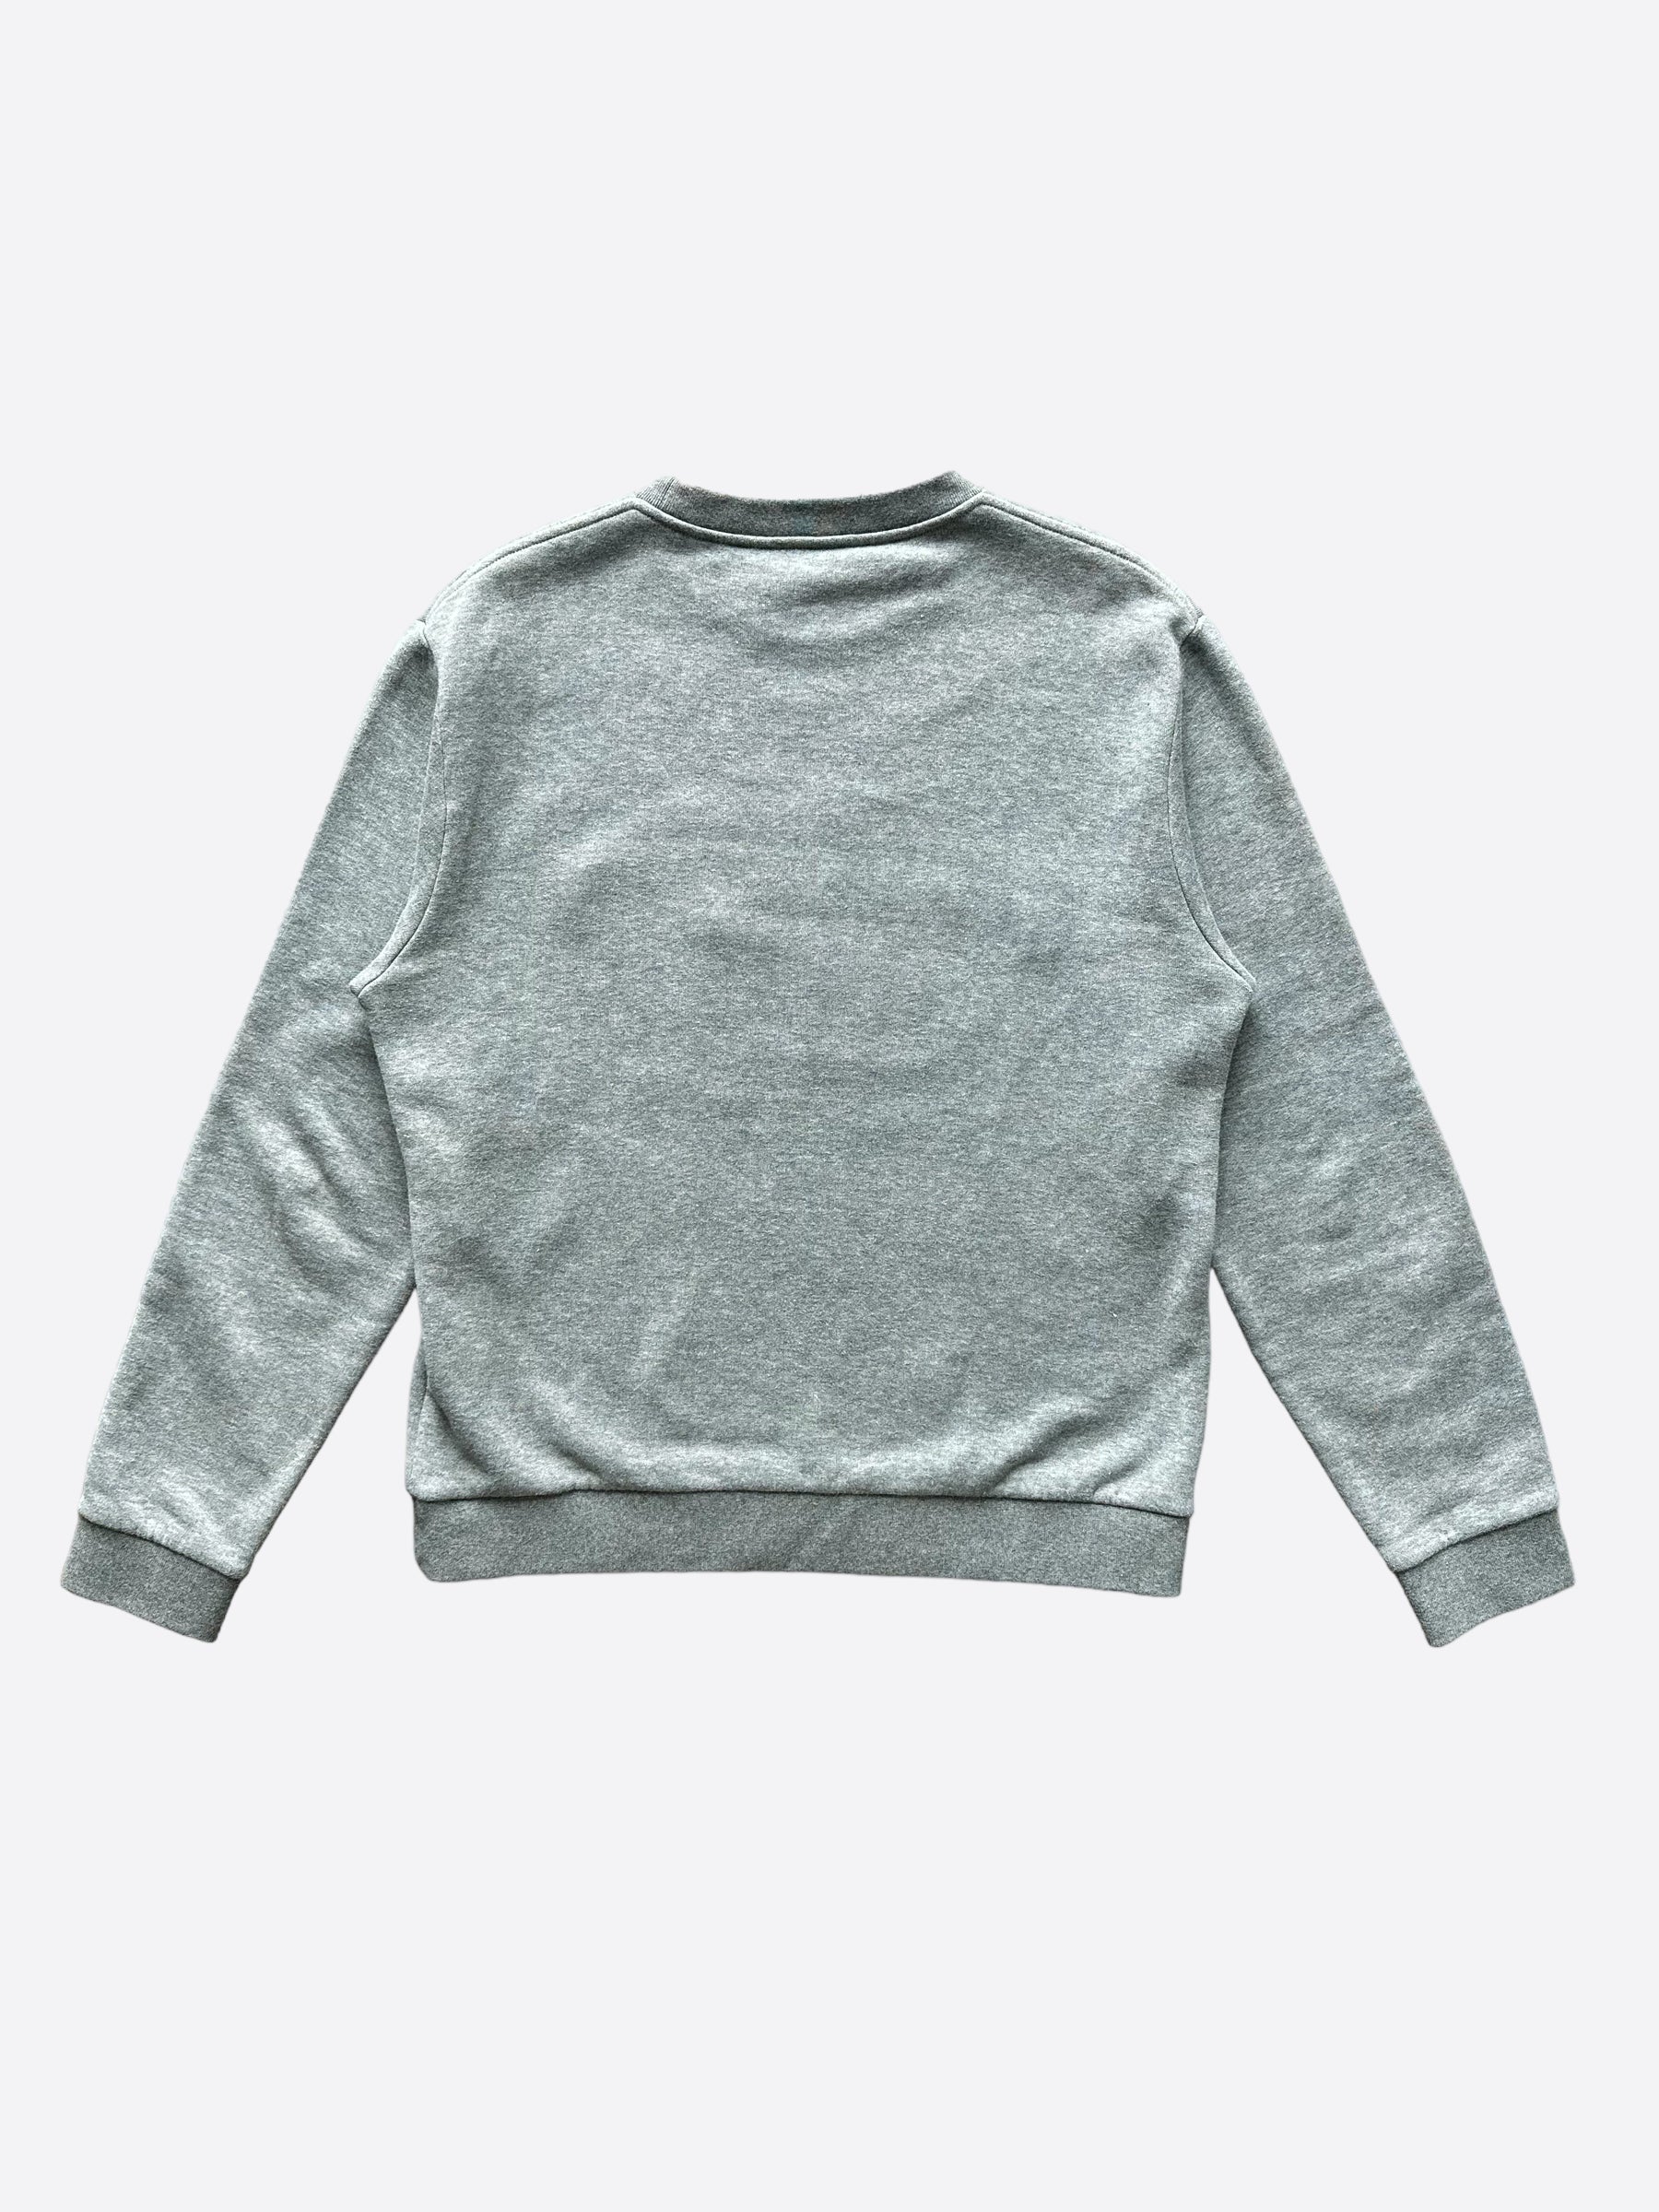 Louis Vuitton Nigo Grey Heart Logo Sweater